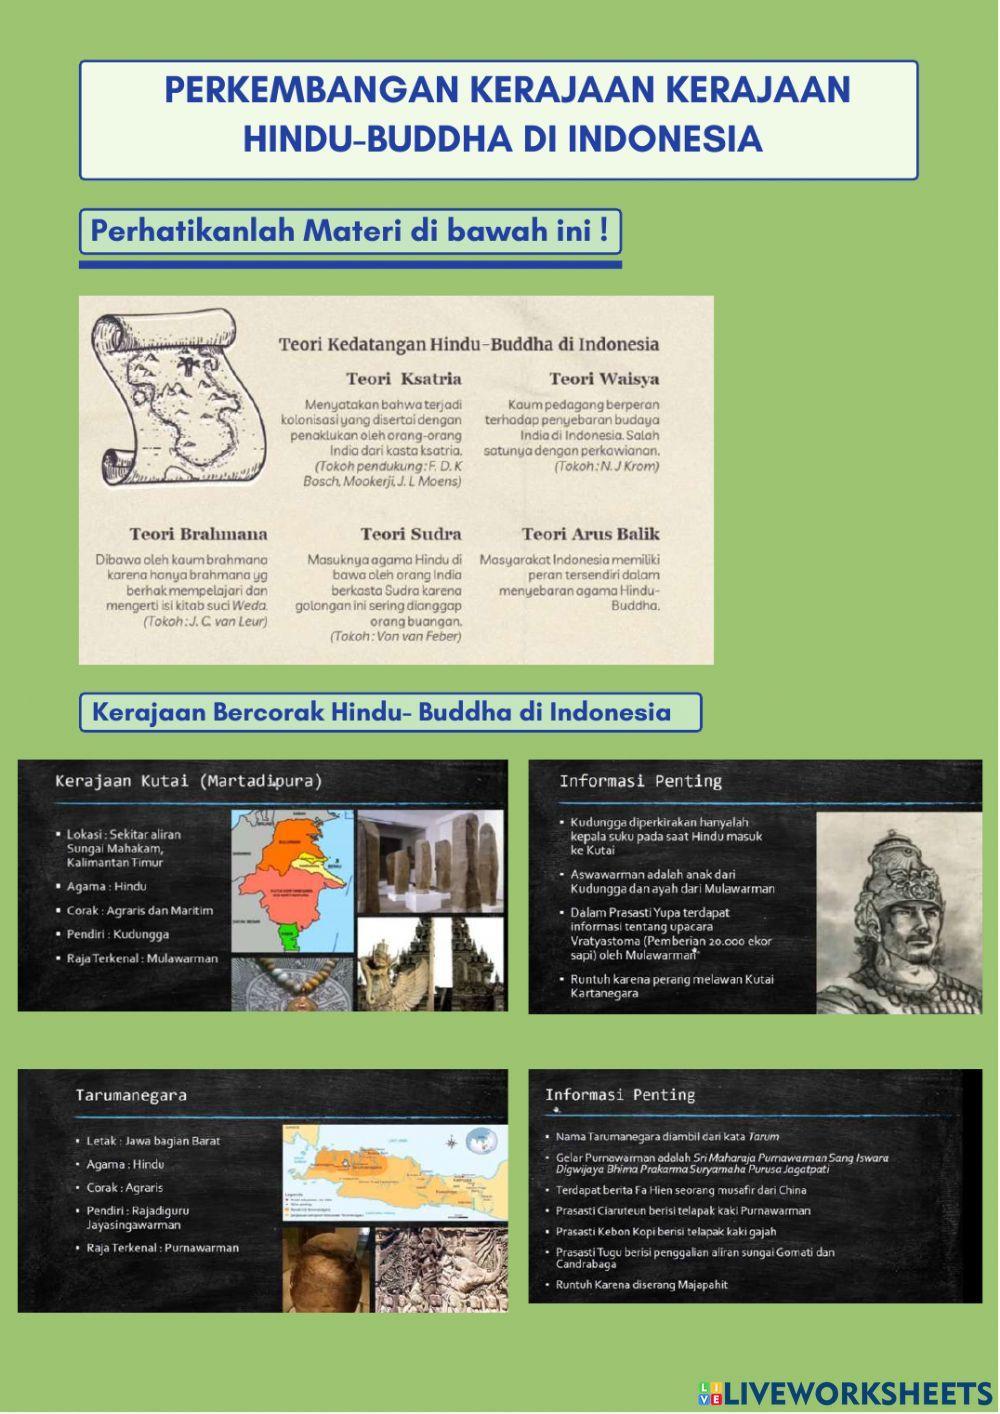 Sejarah Kerajaan Kerajaan Besar di Indonesia pada masa Hindu-Buddha dan Islam